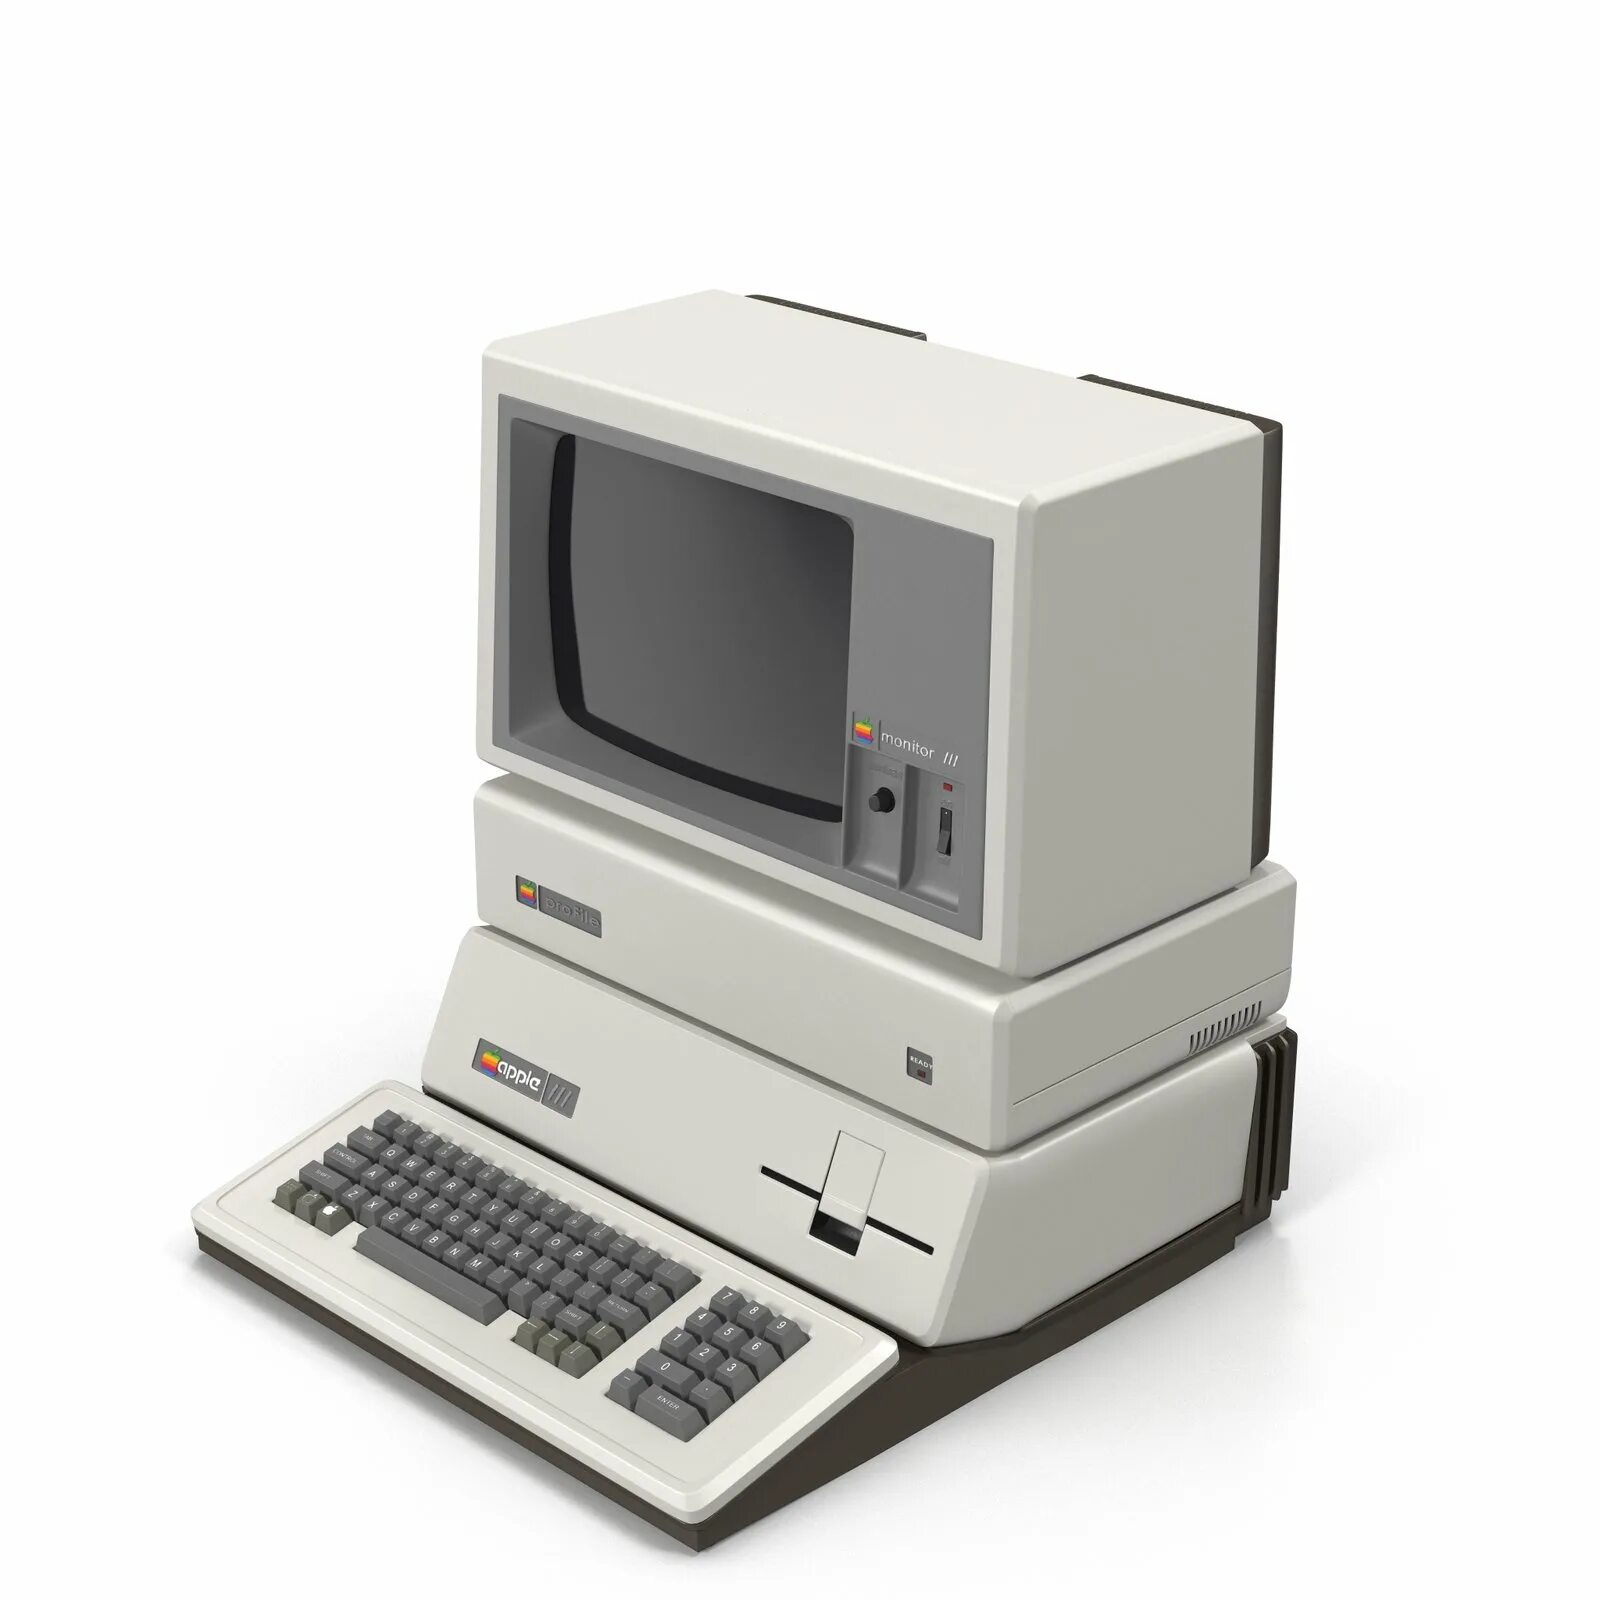 Apple III. Apple Computer 3. Apple 3 Plus. Apple 3 компьютер 1980. New apple 3